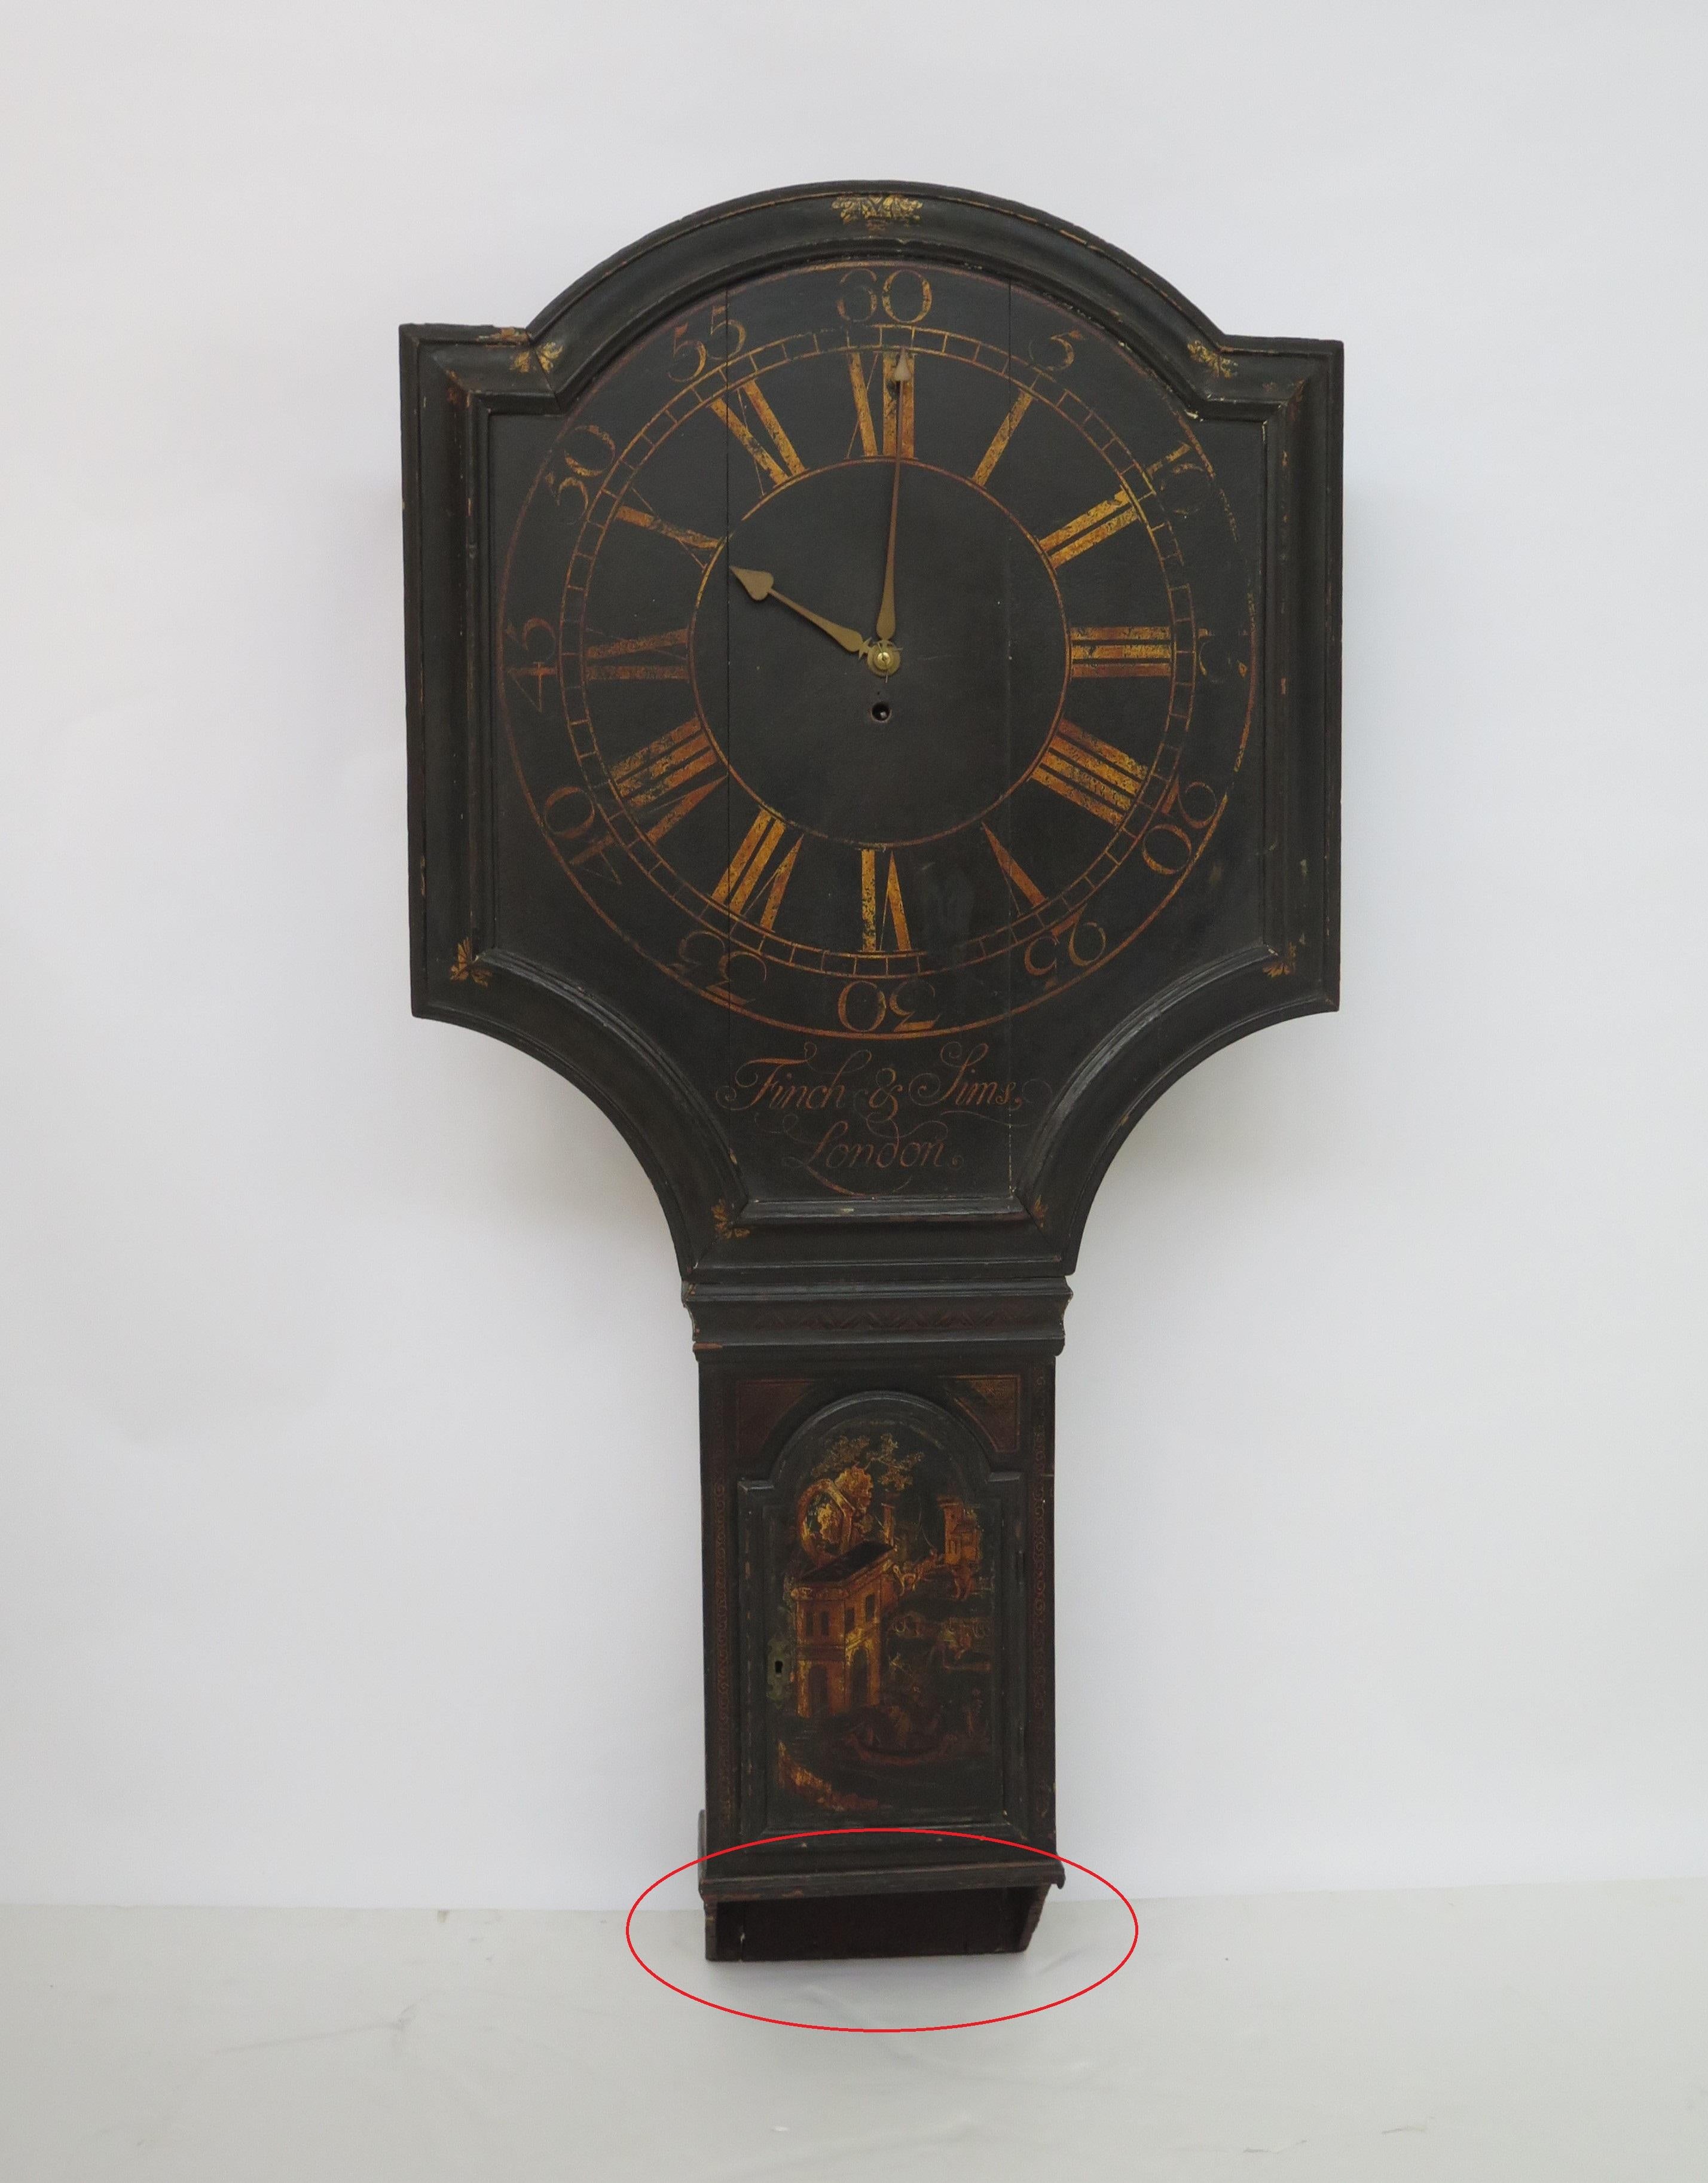 English Act of Parliament Wall Clock / Tavern Clock 9